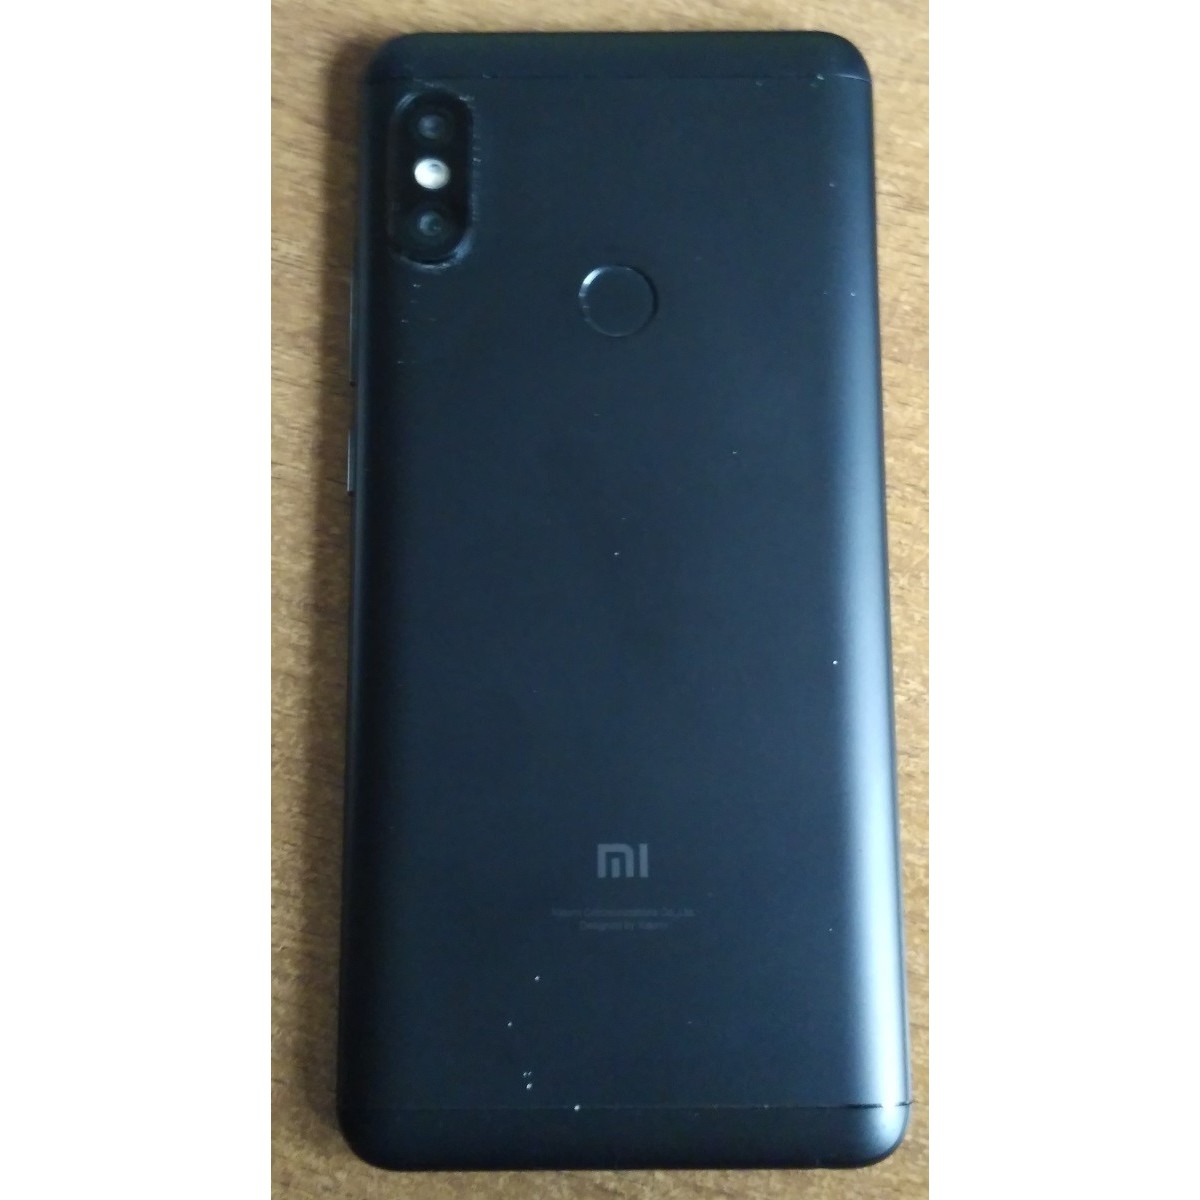 Мобильный телефон Xiaomi Redmi Note 5 64GB/4GB (синий)